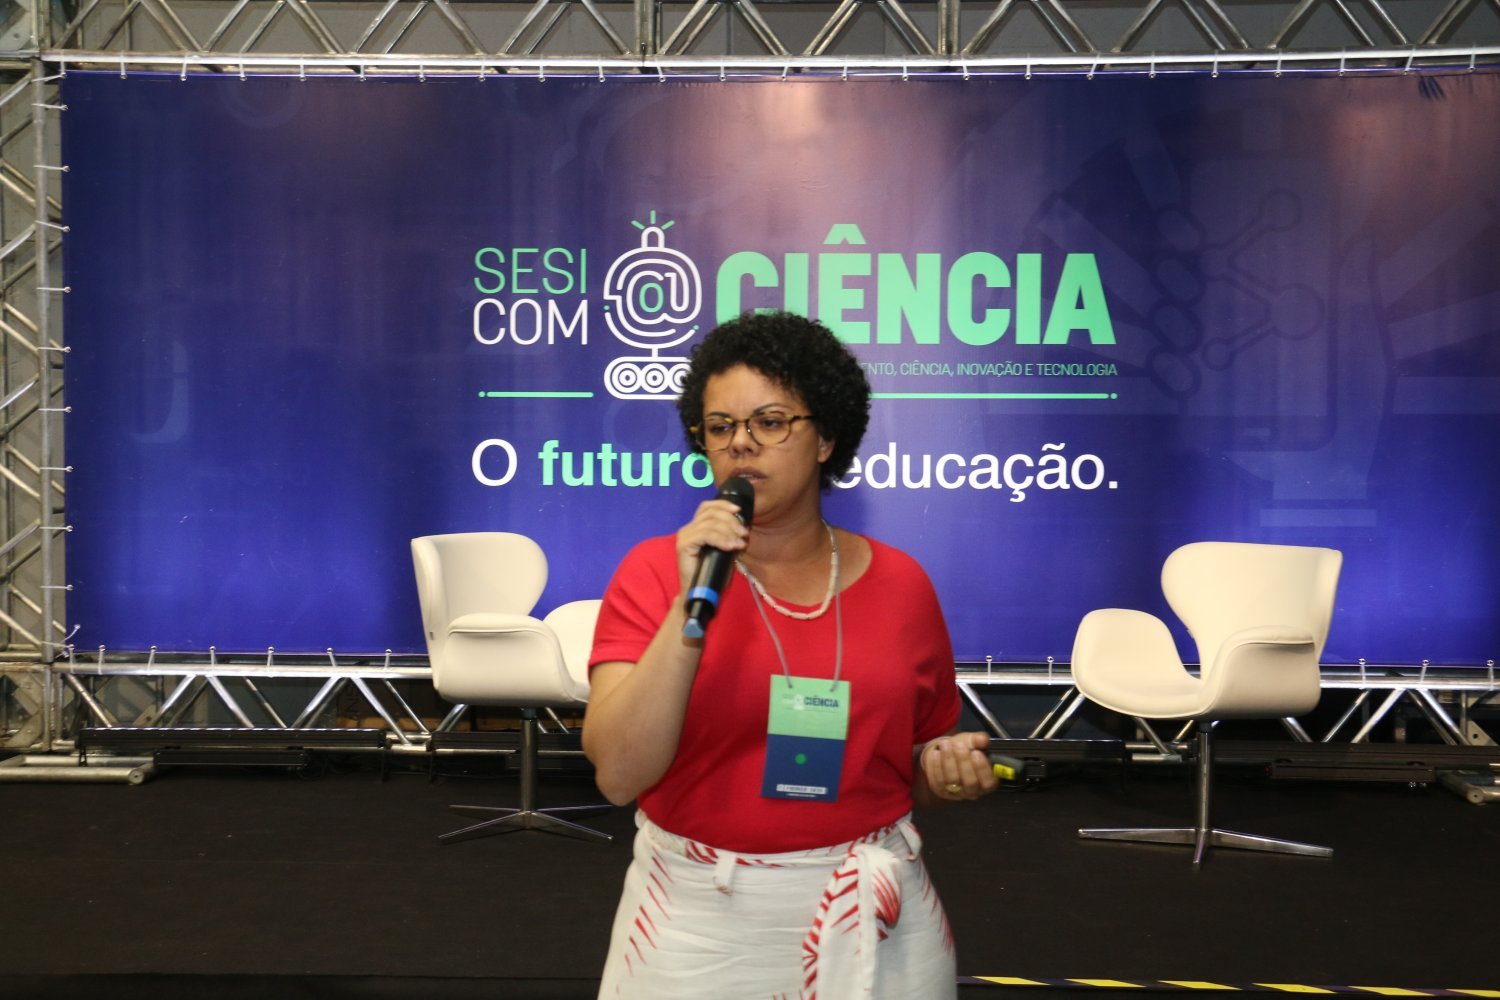 Sesi com@Ciência - Janaina Barros